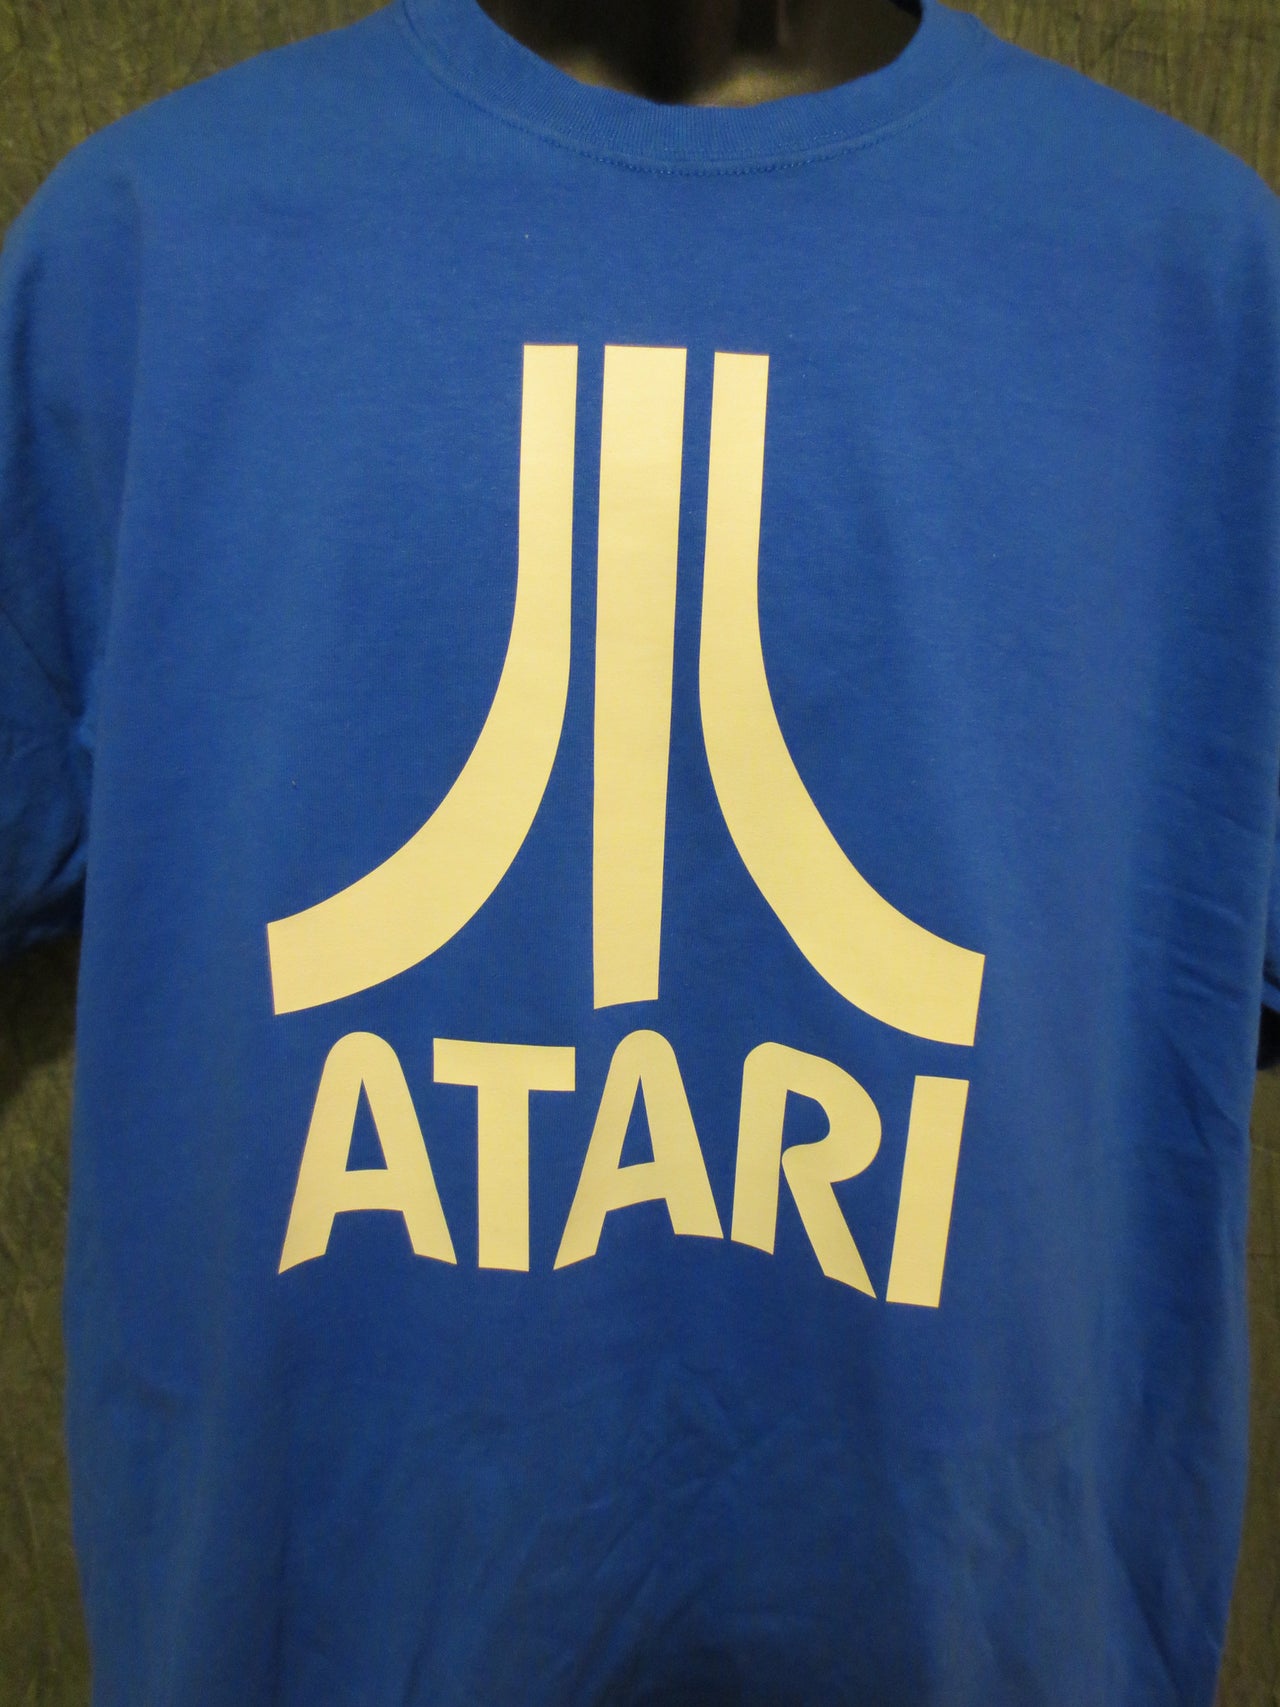 Atari Logo Tshirt: Blue With White Print - TshirtNow.net - 1